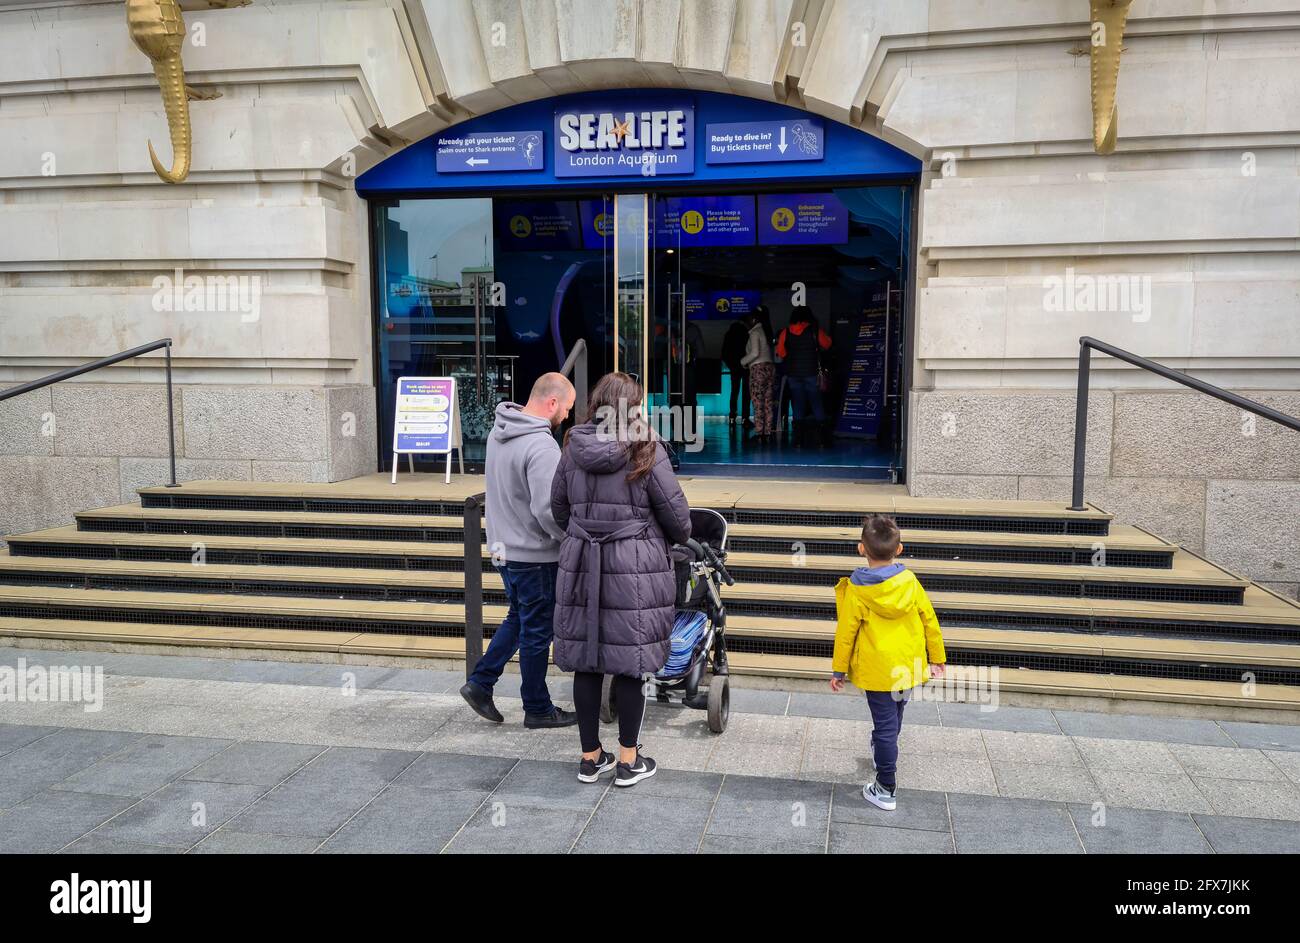 Londra. REGNO UNITO- 05.23.2021. L'entrata principale della popolare attrazione Sea Life London Aquarium con i visitatori che entrano per acquistare i biglietti. Foto Stock